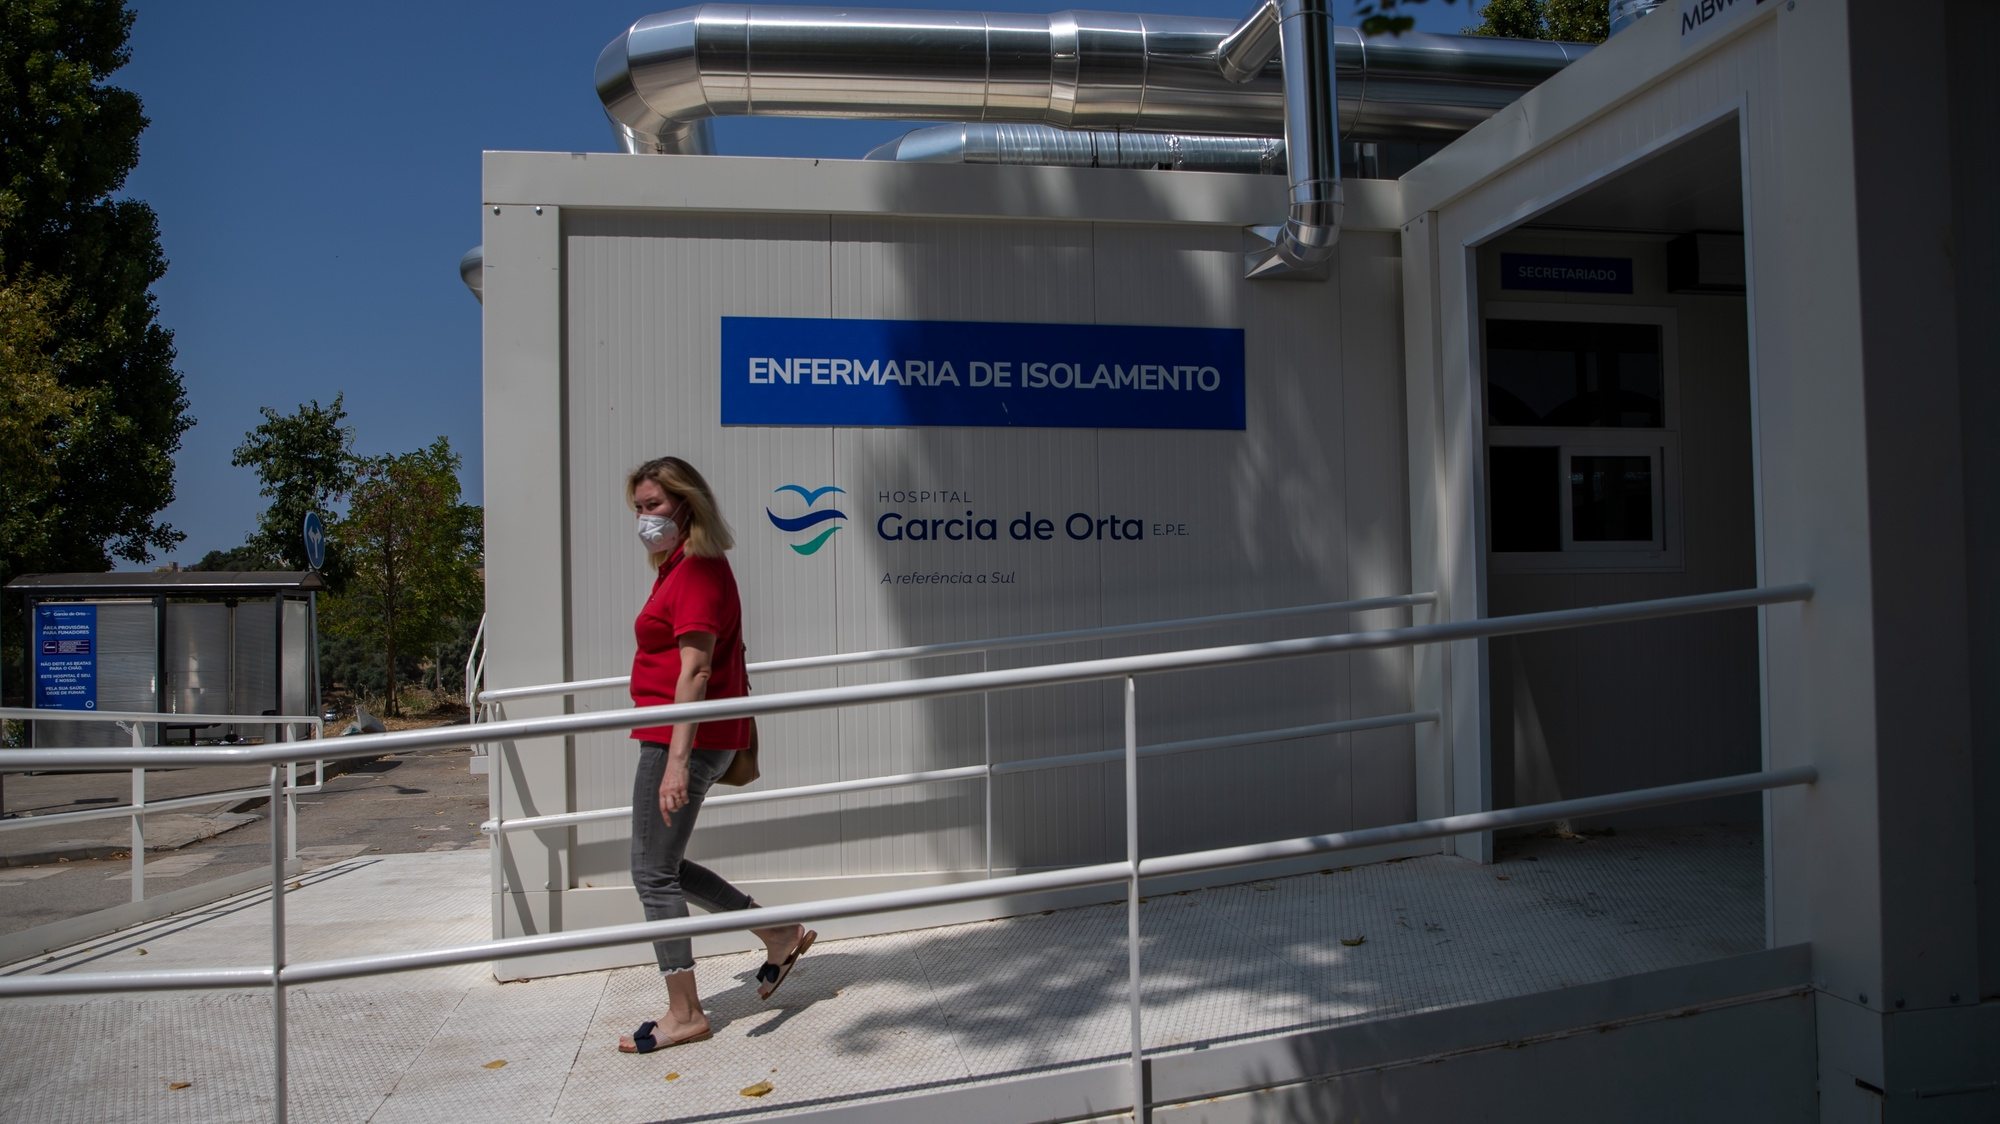 Exterior da Enfermaria de isolamento do Hospital Garcia de Orta qye recebe pacientes infectados com a Covid-19, em Almada, 21 de julho de 2021. JOSÉ SENA GOULÃO/LUSA (ACOMPANHA TEXTO DE 24/07/2021)